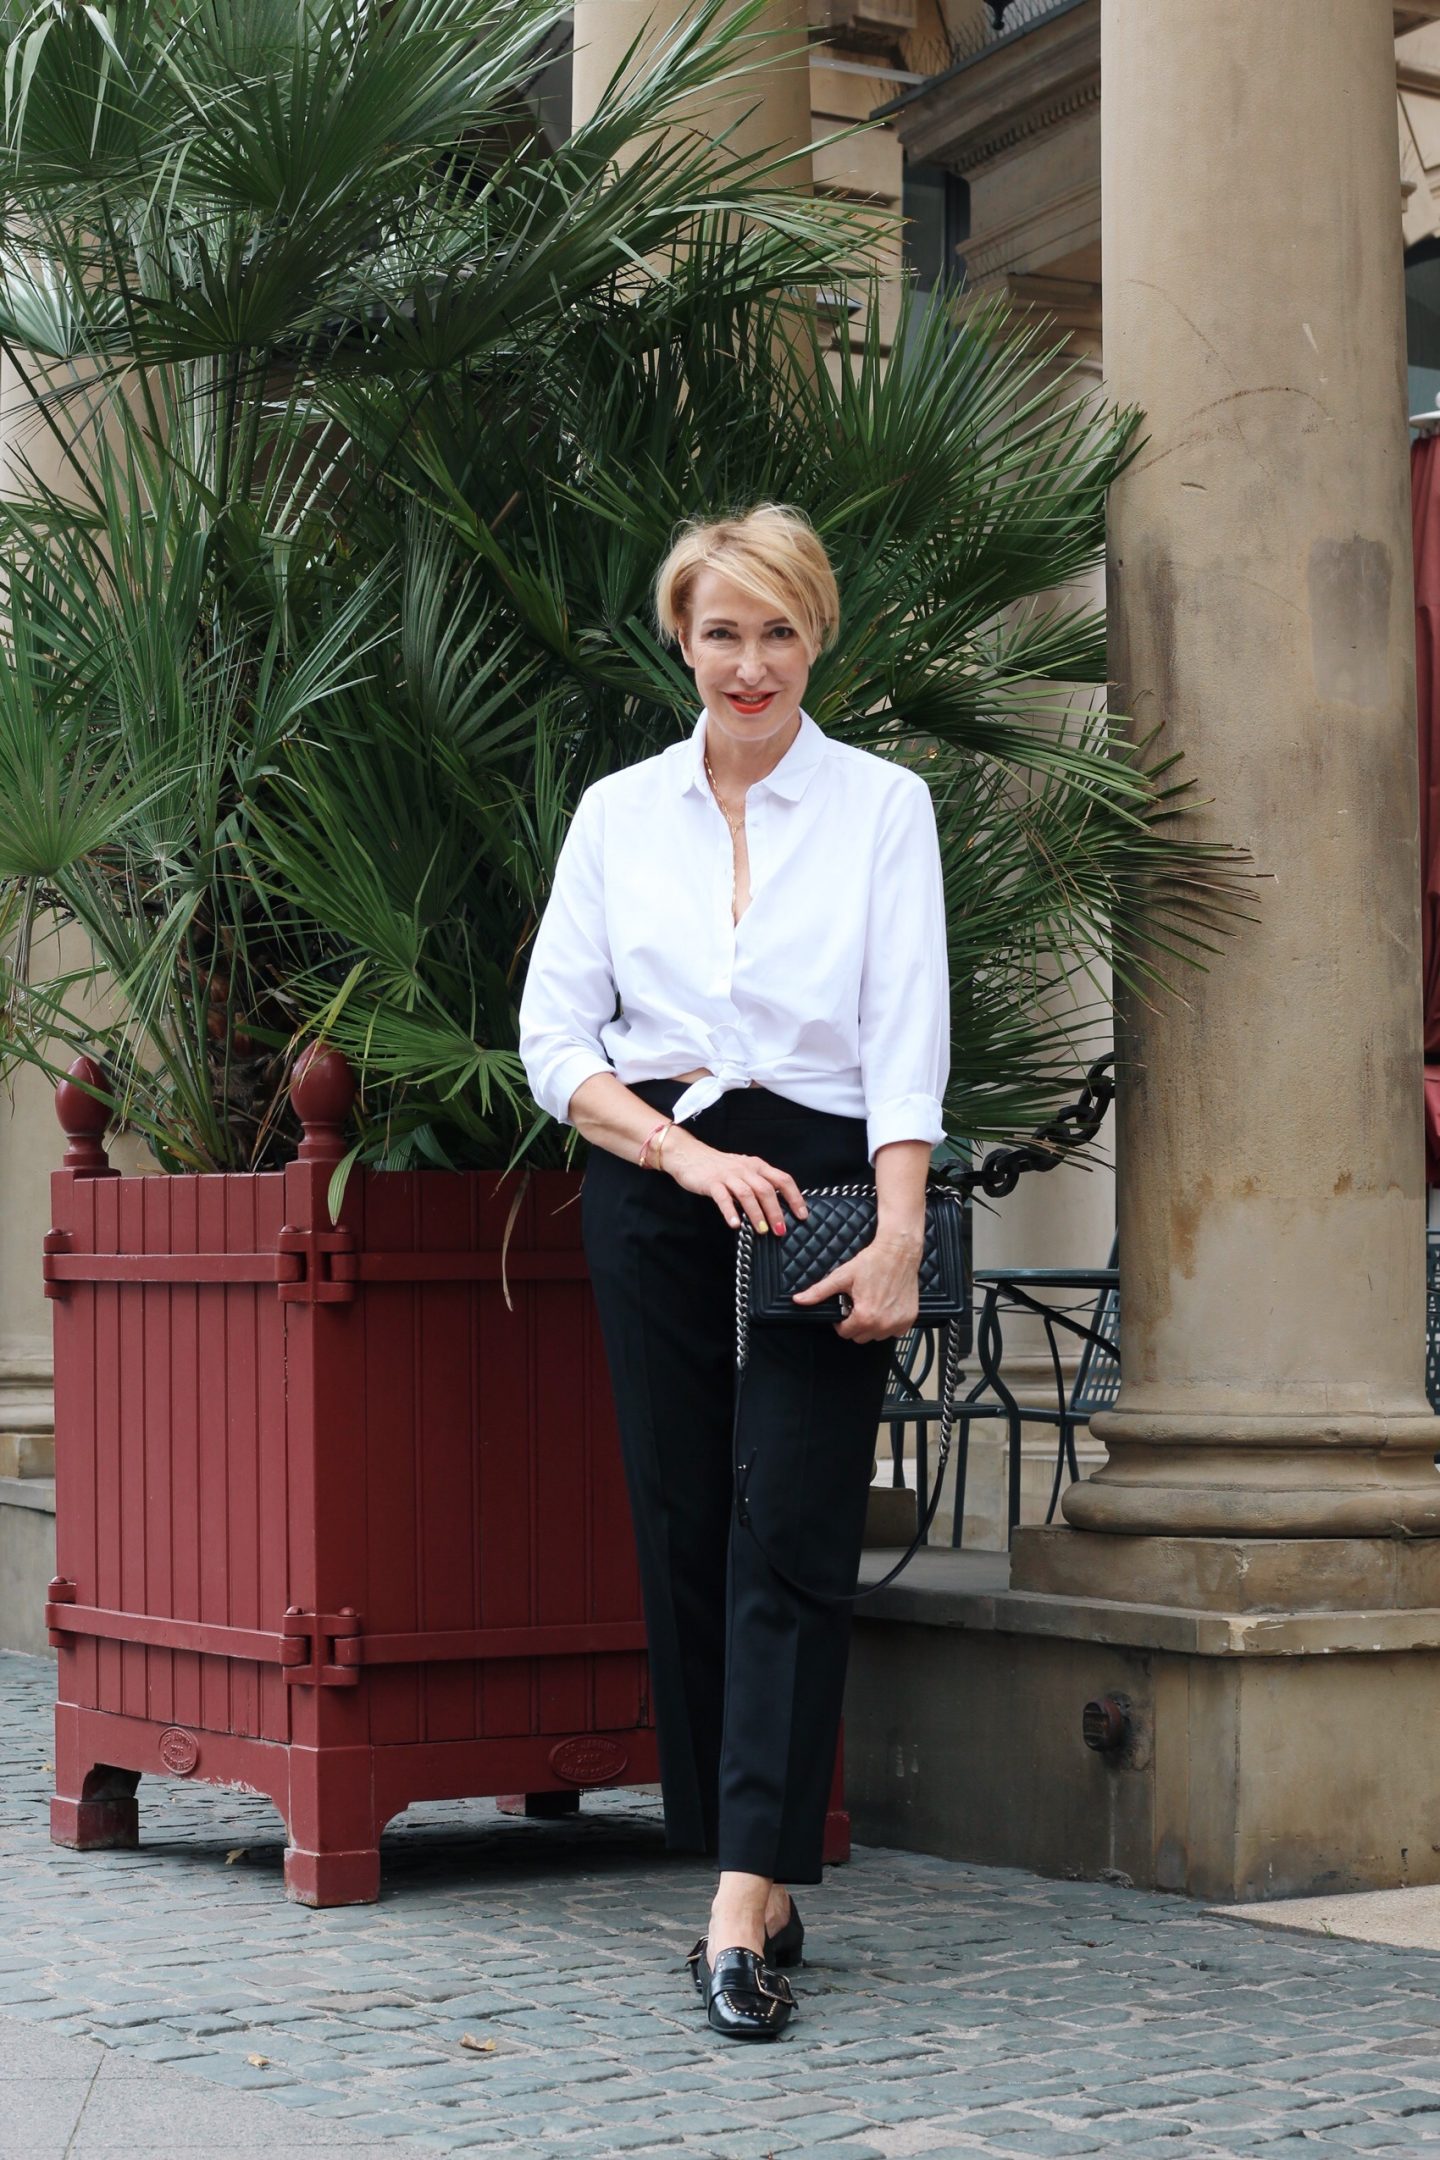 Das perfekte Outfit für die After-Work-Party - Fashionblog für Frauen Ü40 Ü50, weiße Bluse und schwarze Hose - schick und elegant.